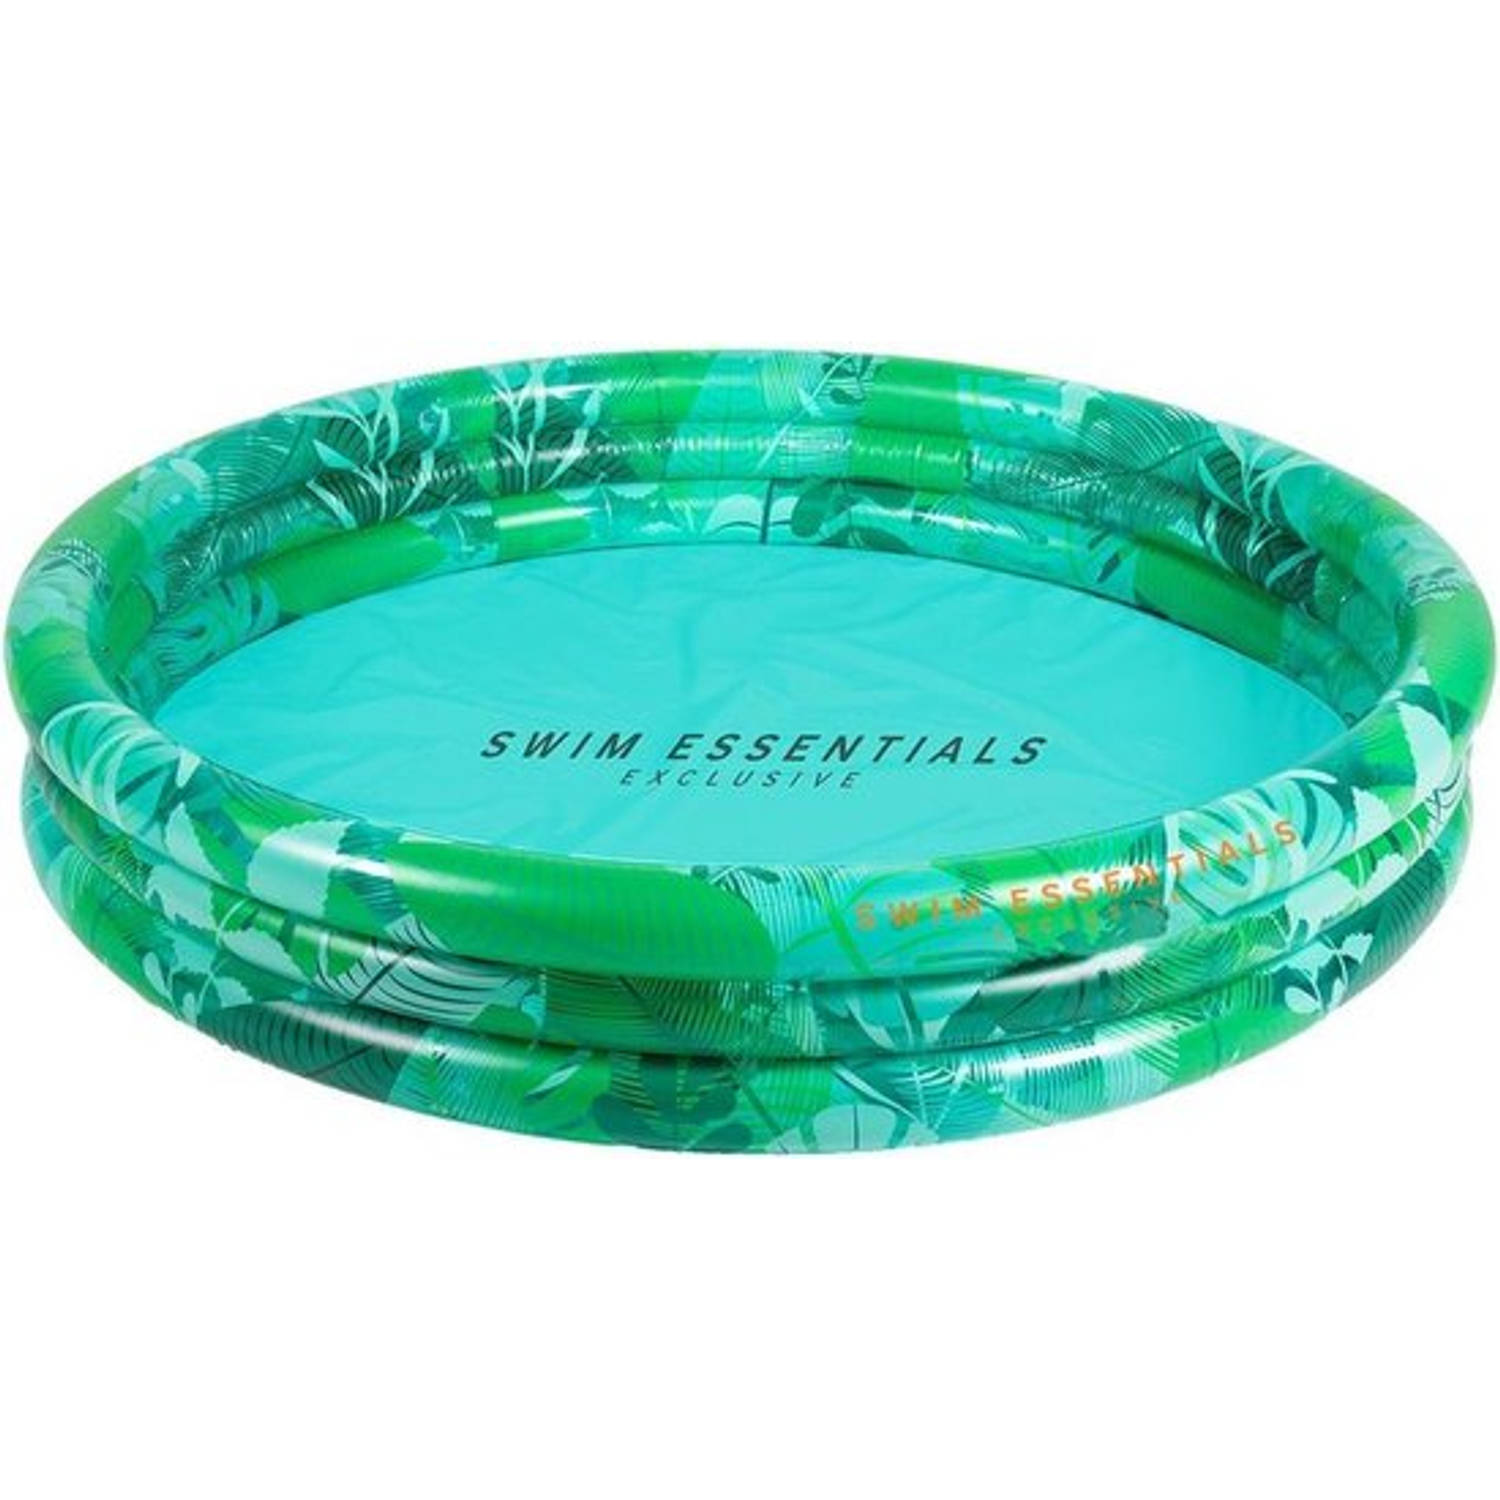 Swim Essentials - Zwembad - Tropical - 150cm - Opblaas Zwembad